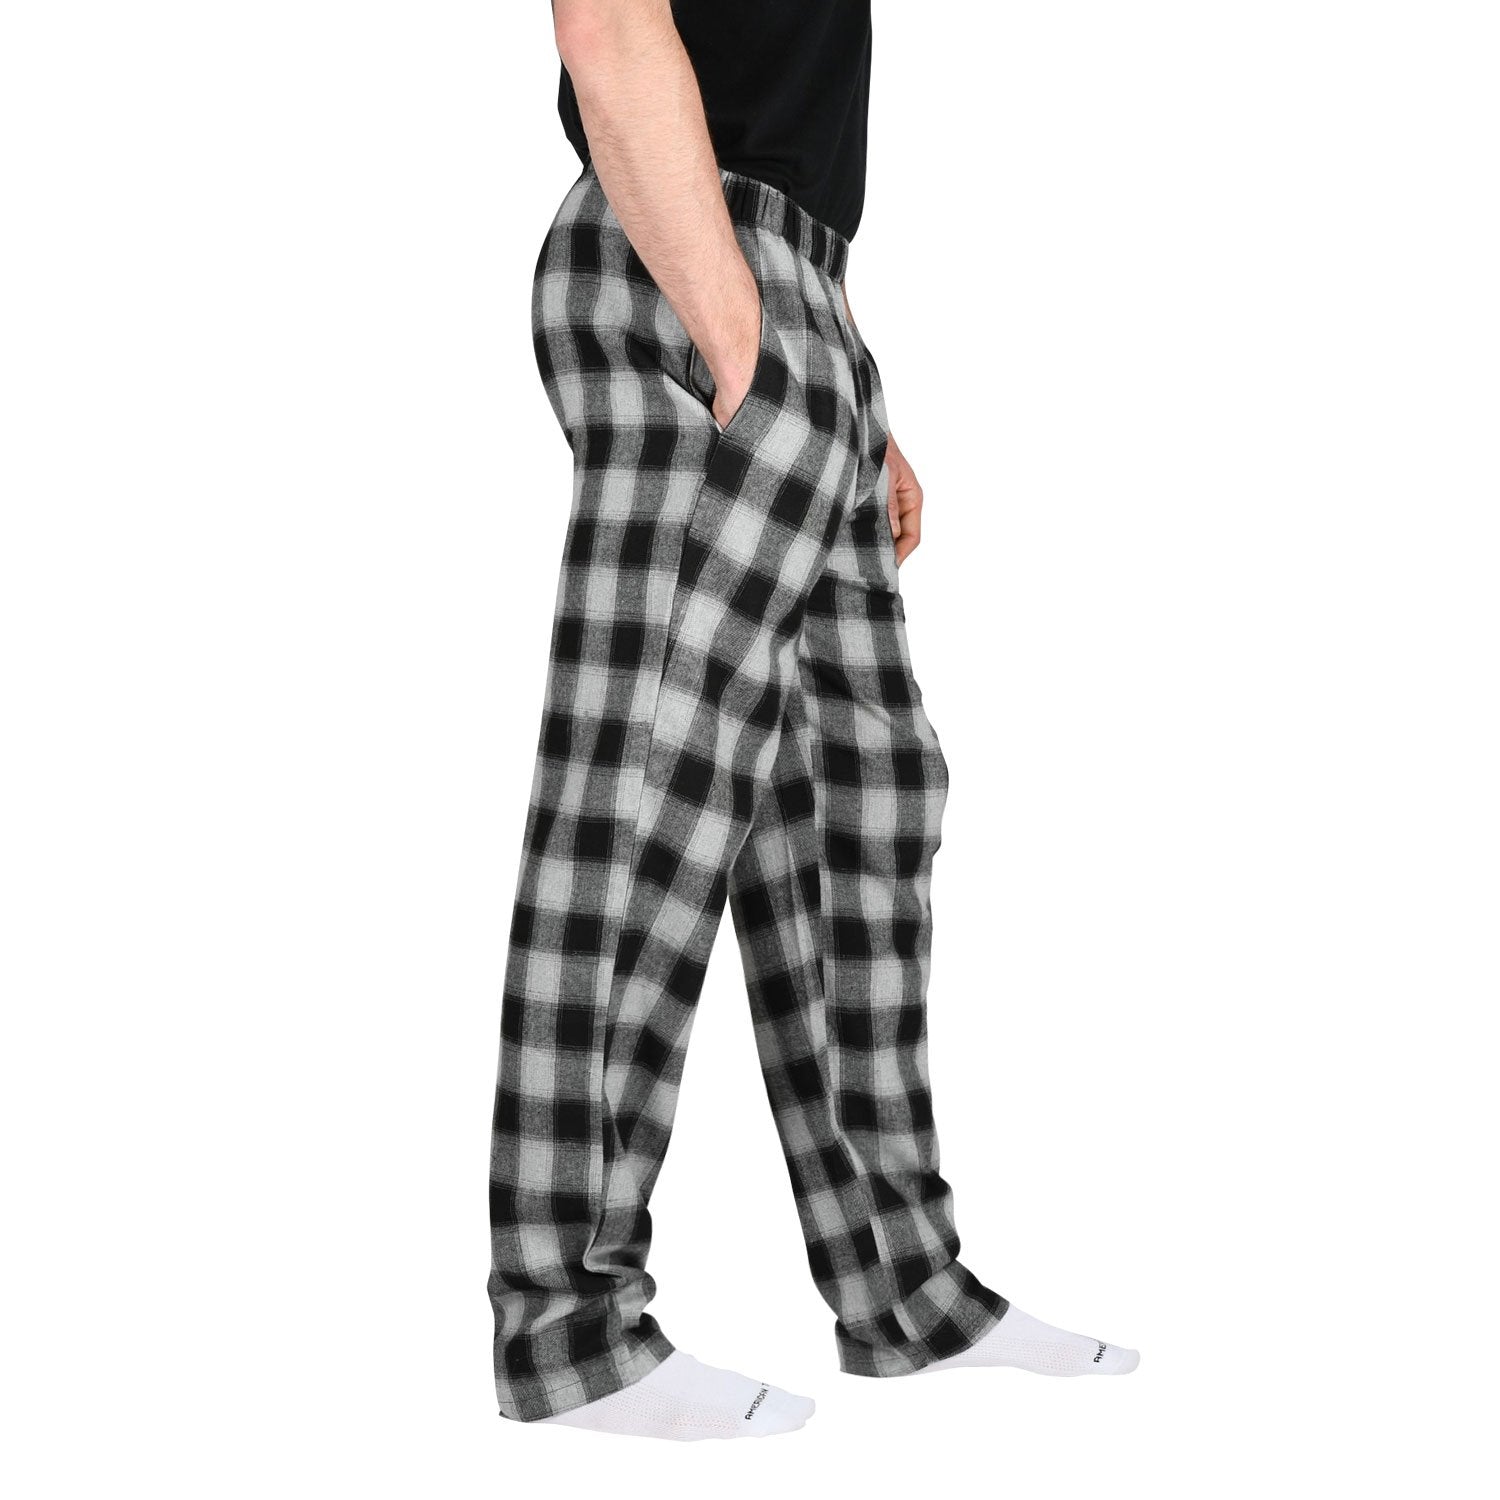 tall pyjamas